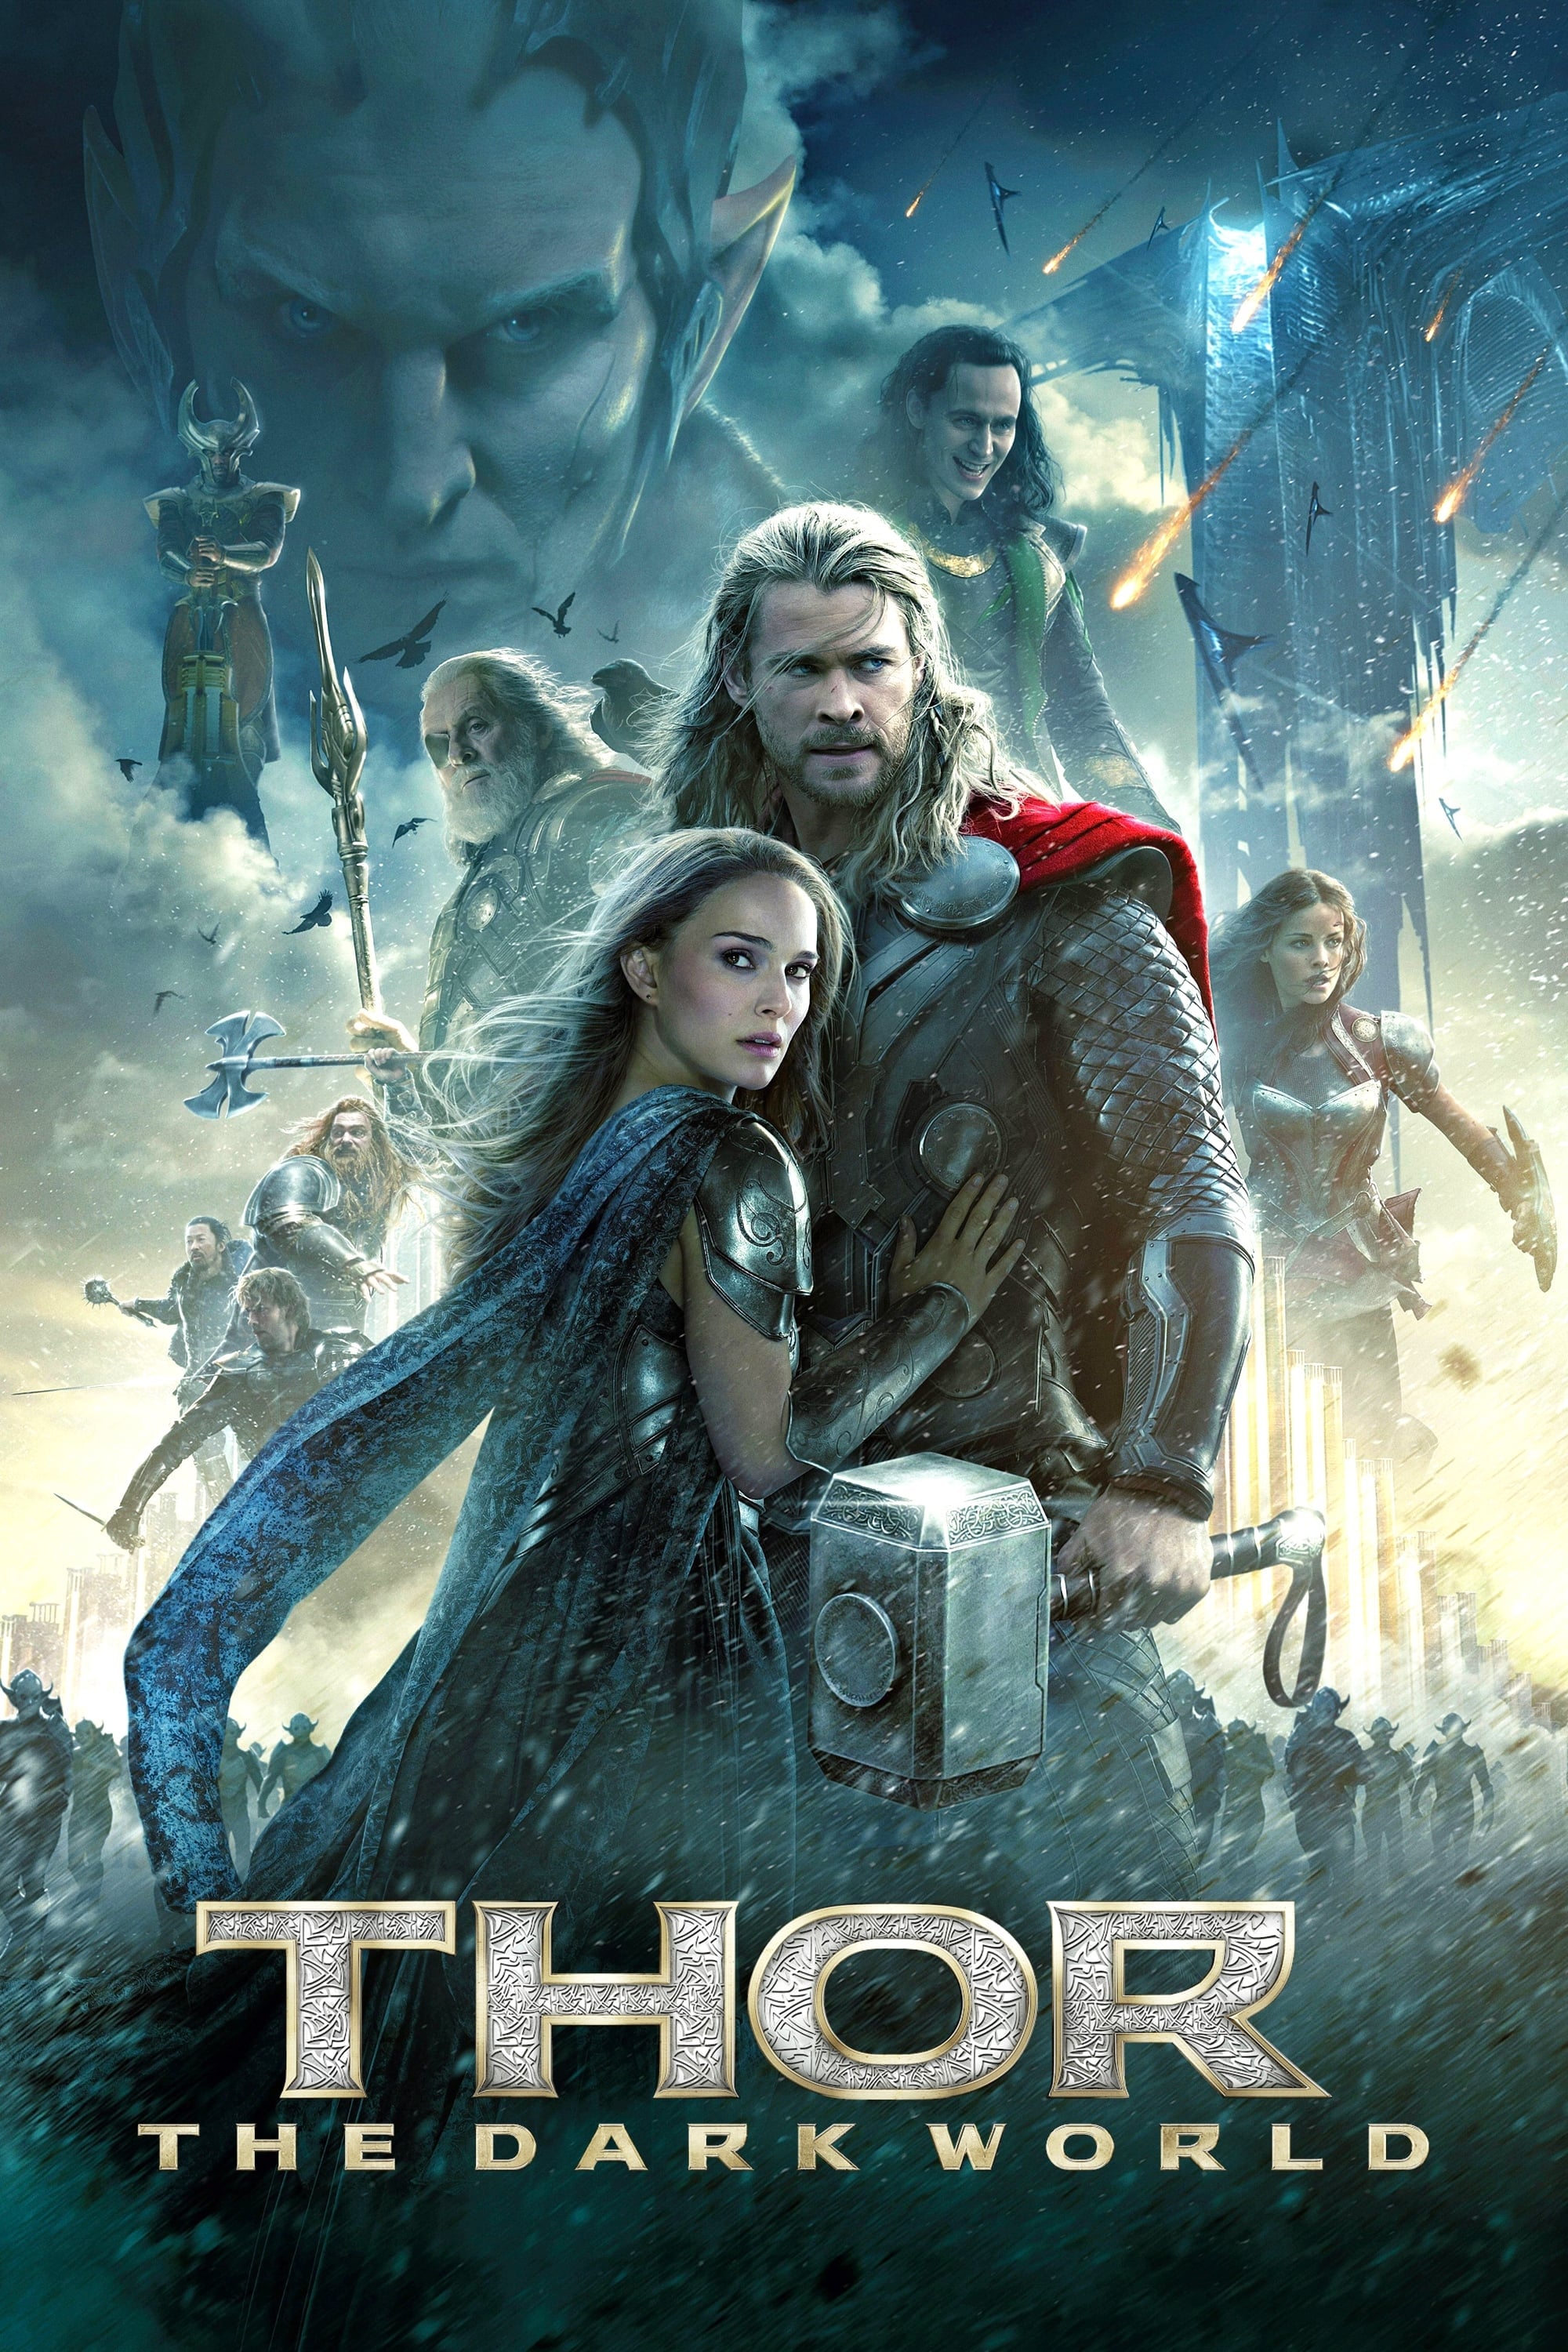 Universo Marvel 616: Chris Hemsworth quer um novo filme do Thor diferente  dos dois últimos